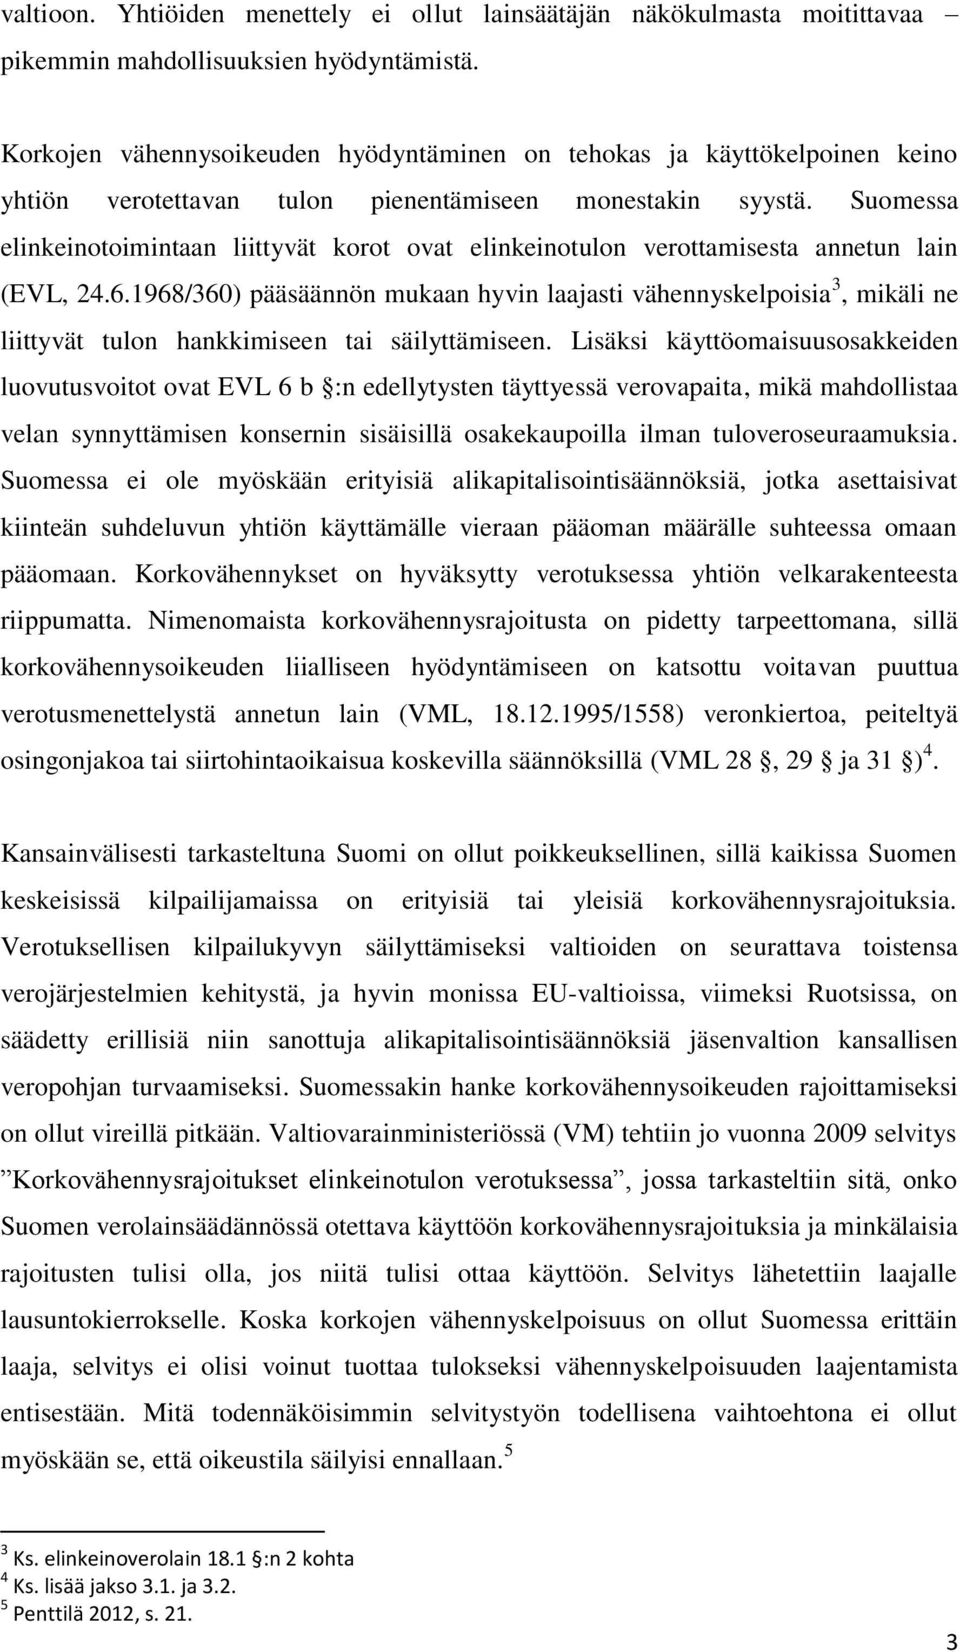 Suomessa elinkeinotoimintaan liittyvät korot ovat elinkeinotulon verottamisesta annetun lain (EVL, 24.6.